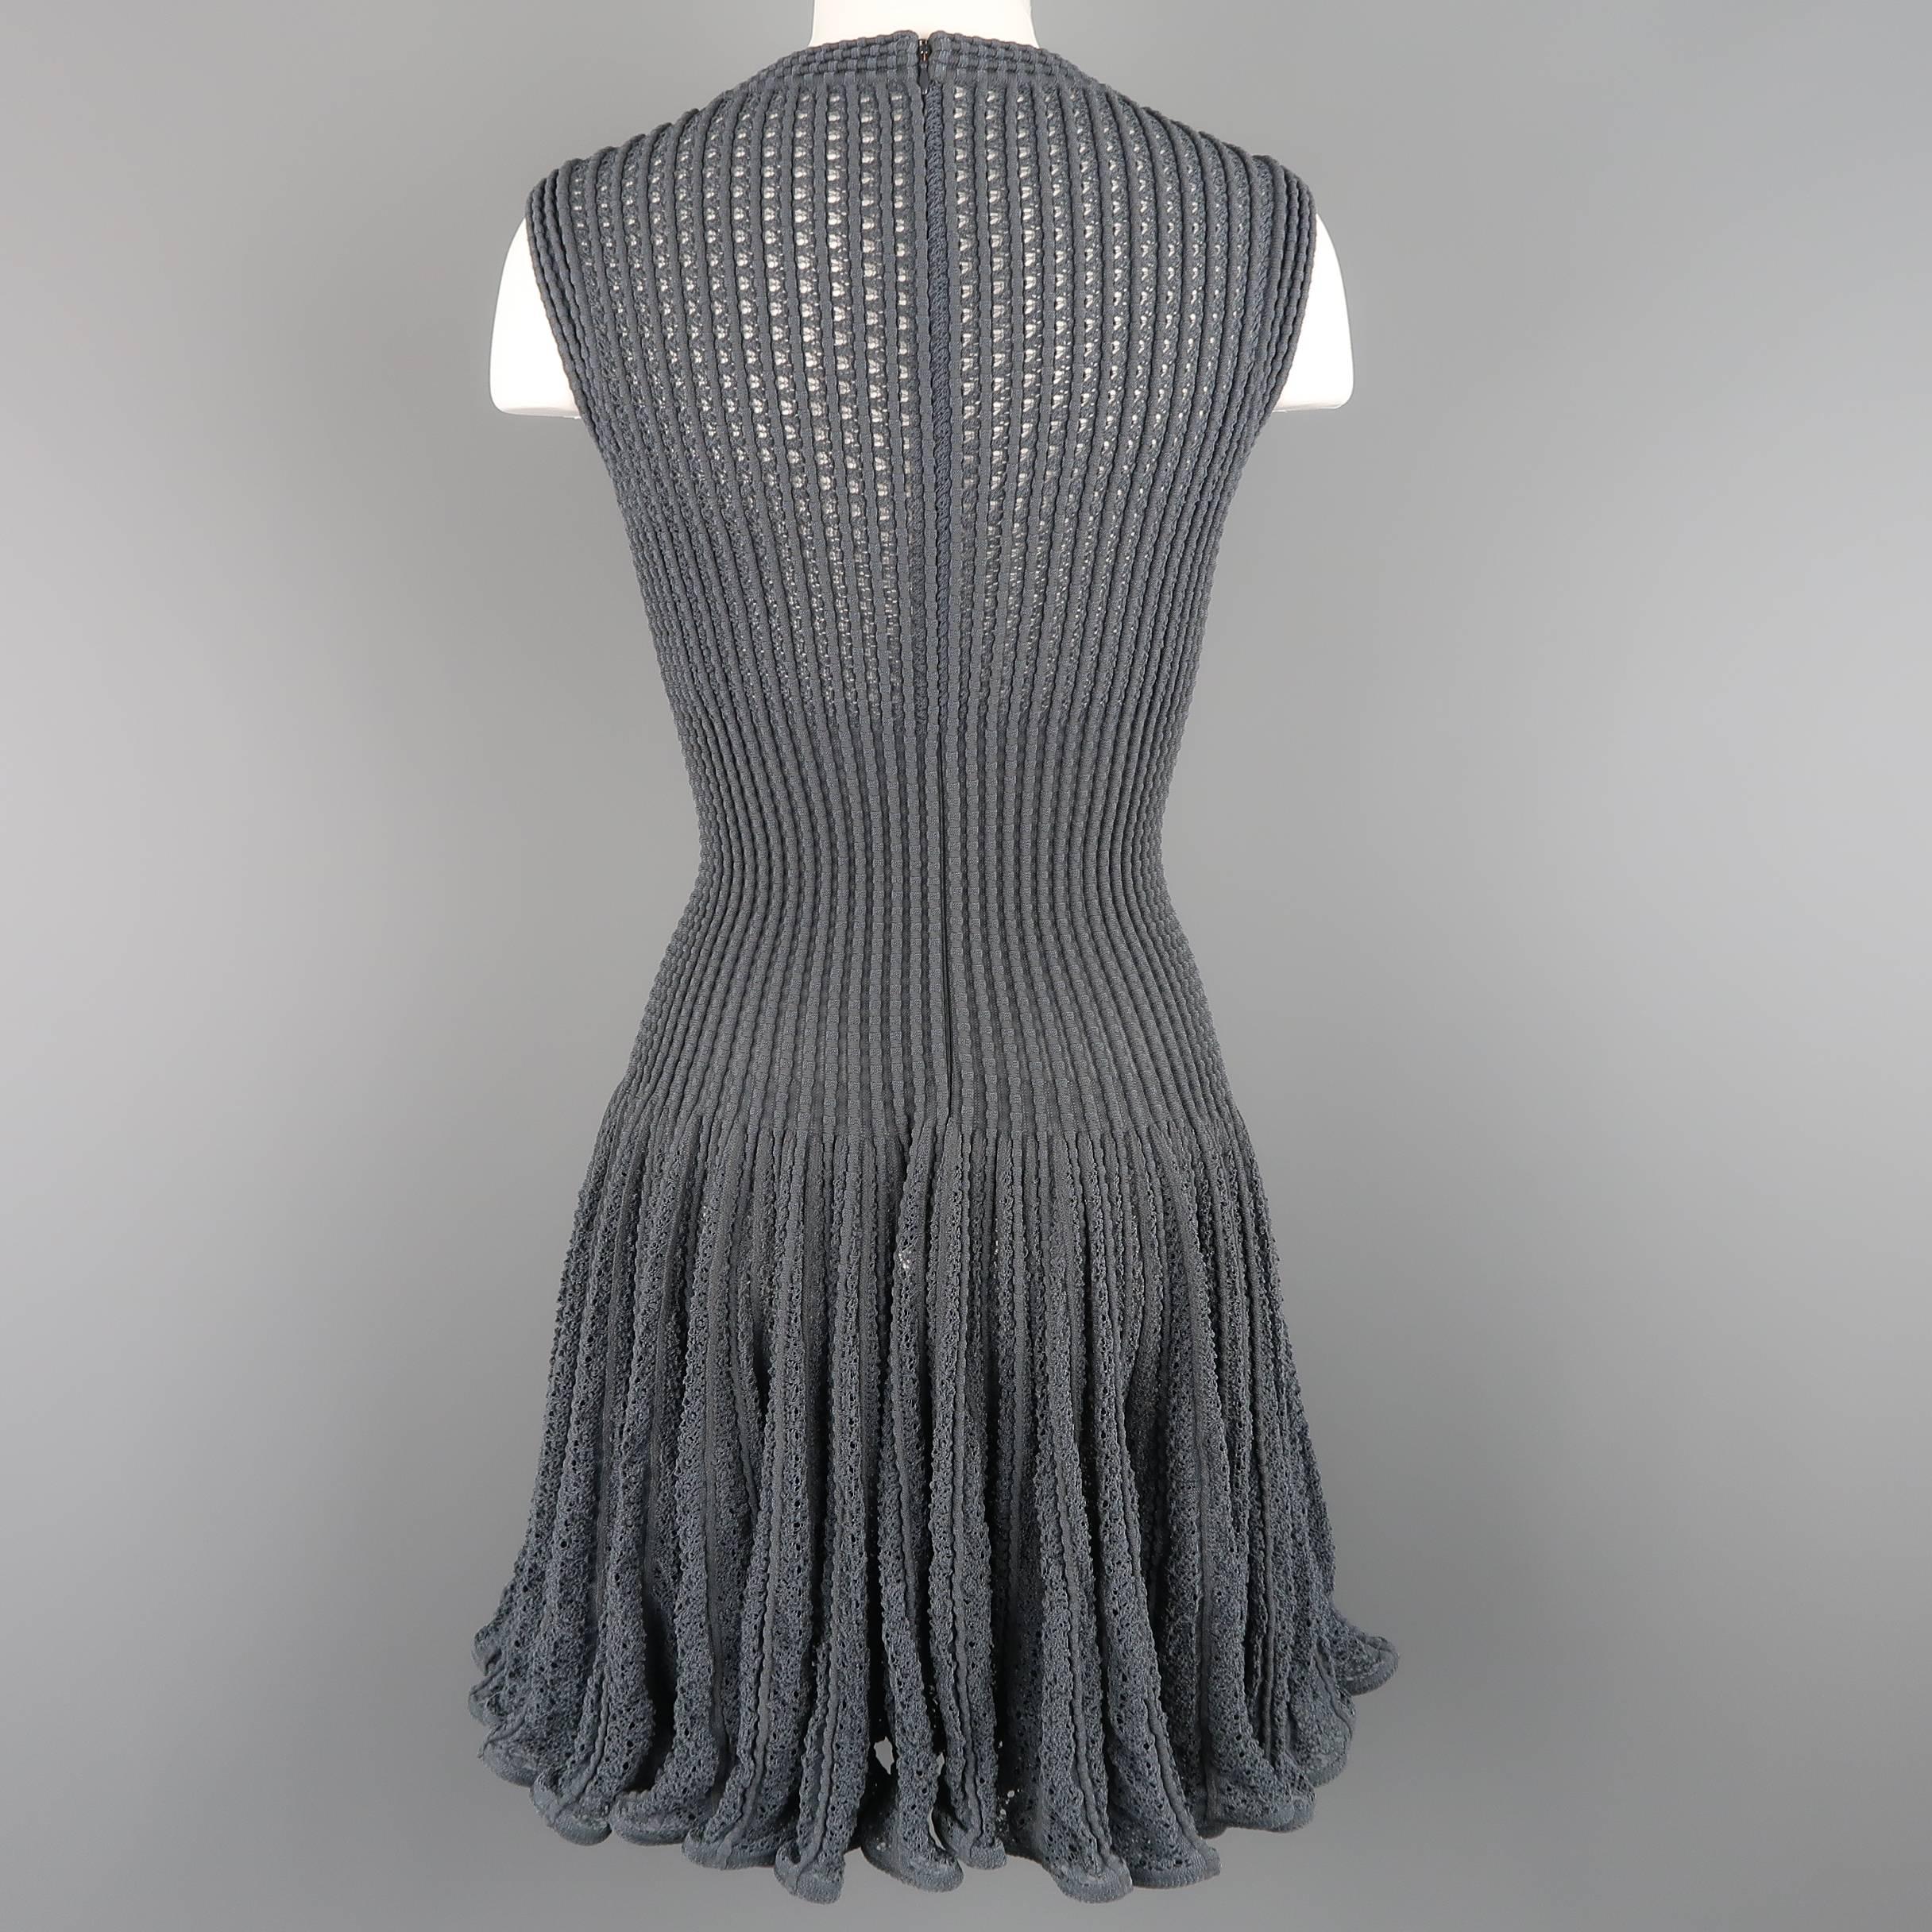 Alaia Dress - Blue Gray Cotton Blend Mesh Knit Ruffle Skirt 1